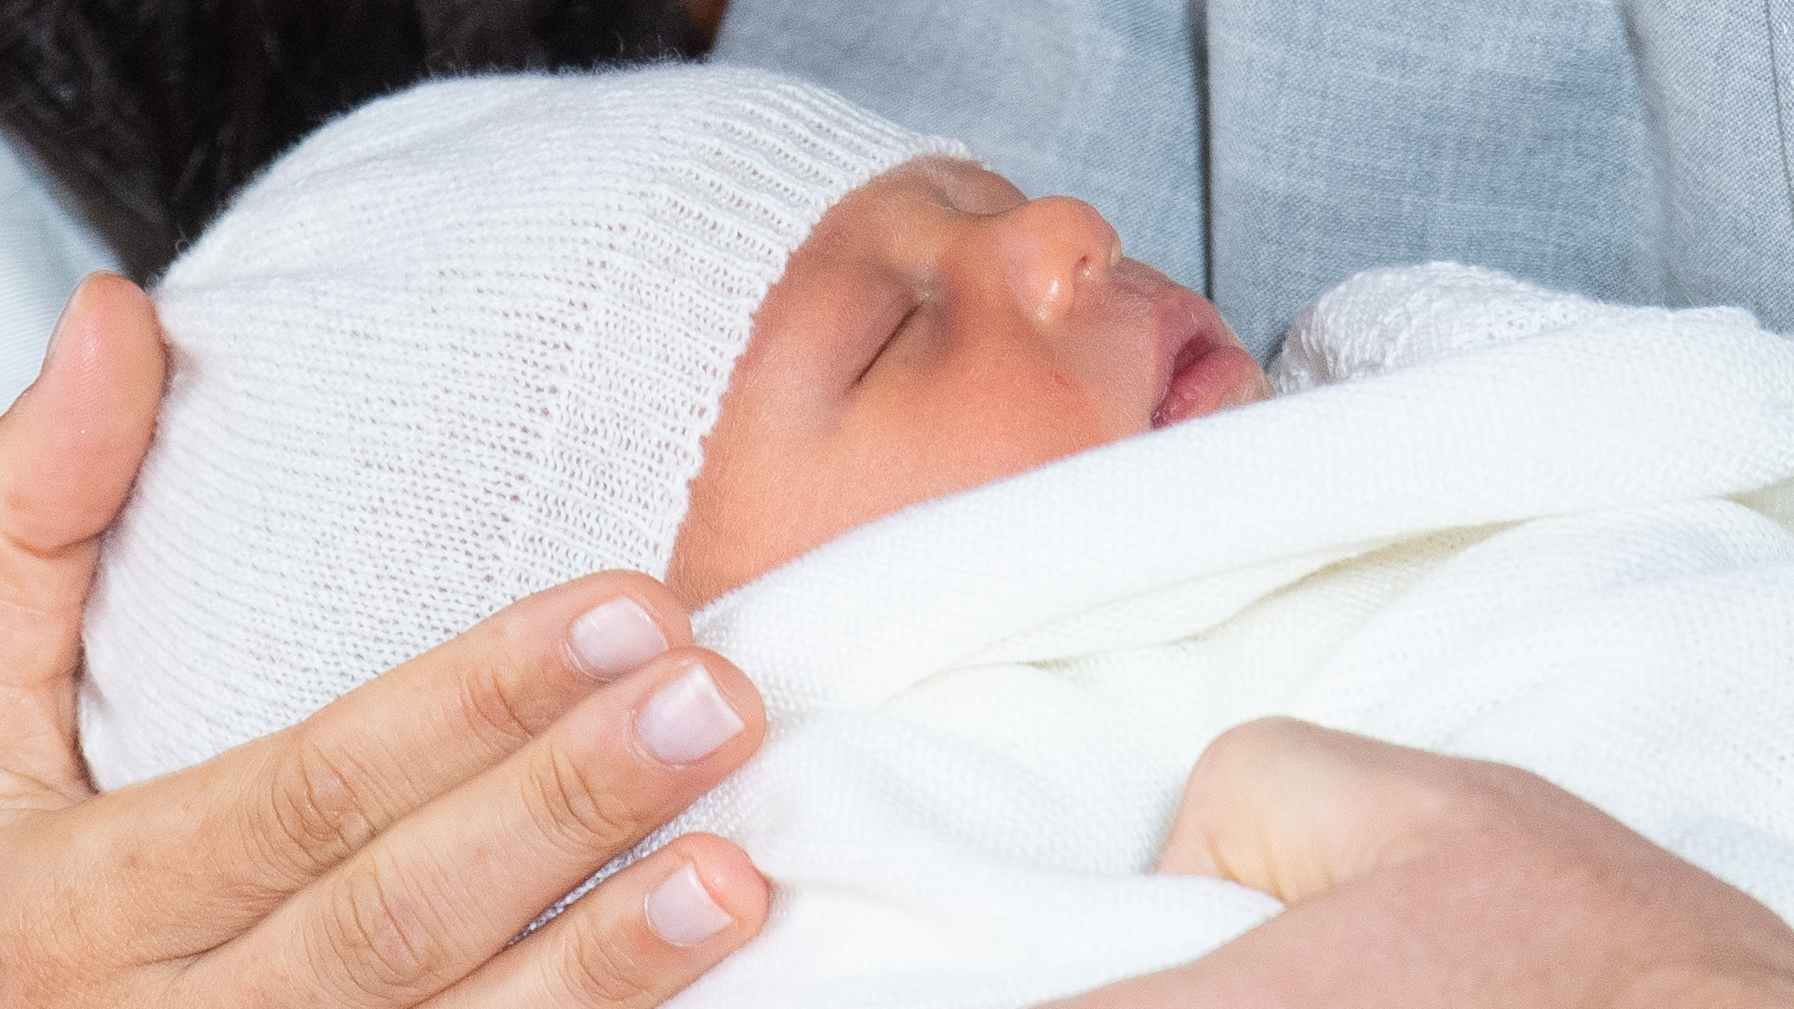 Royal album: All the adorable photos of baby Archie so far